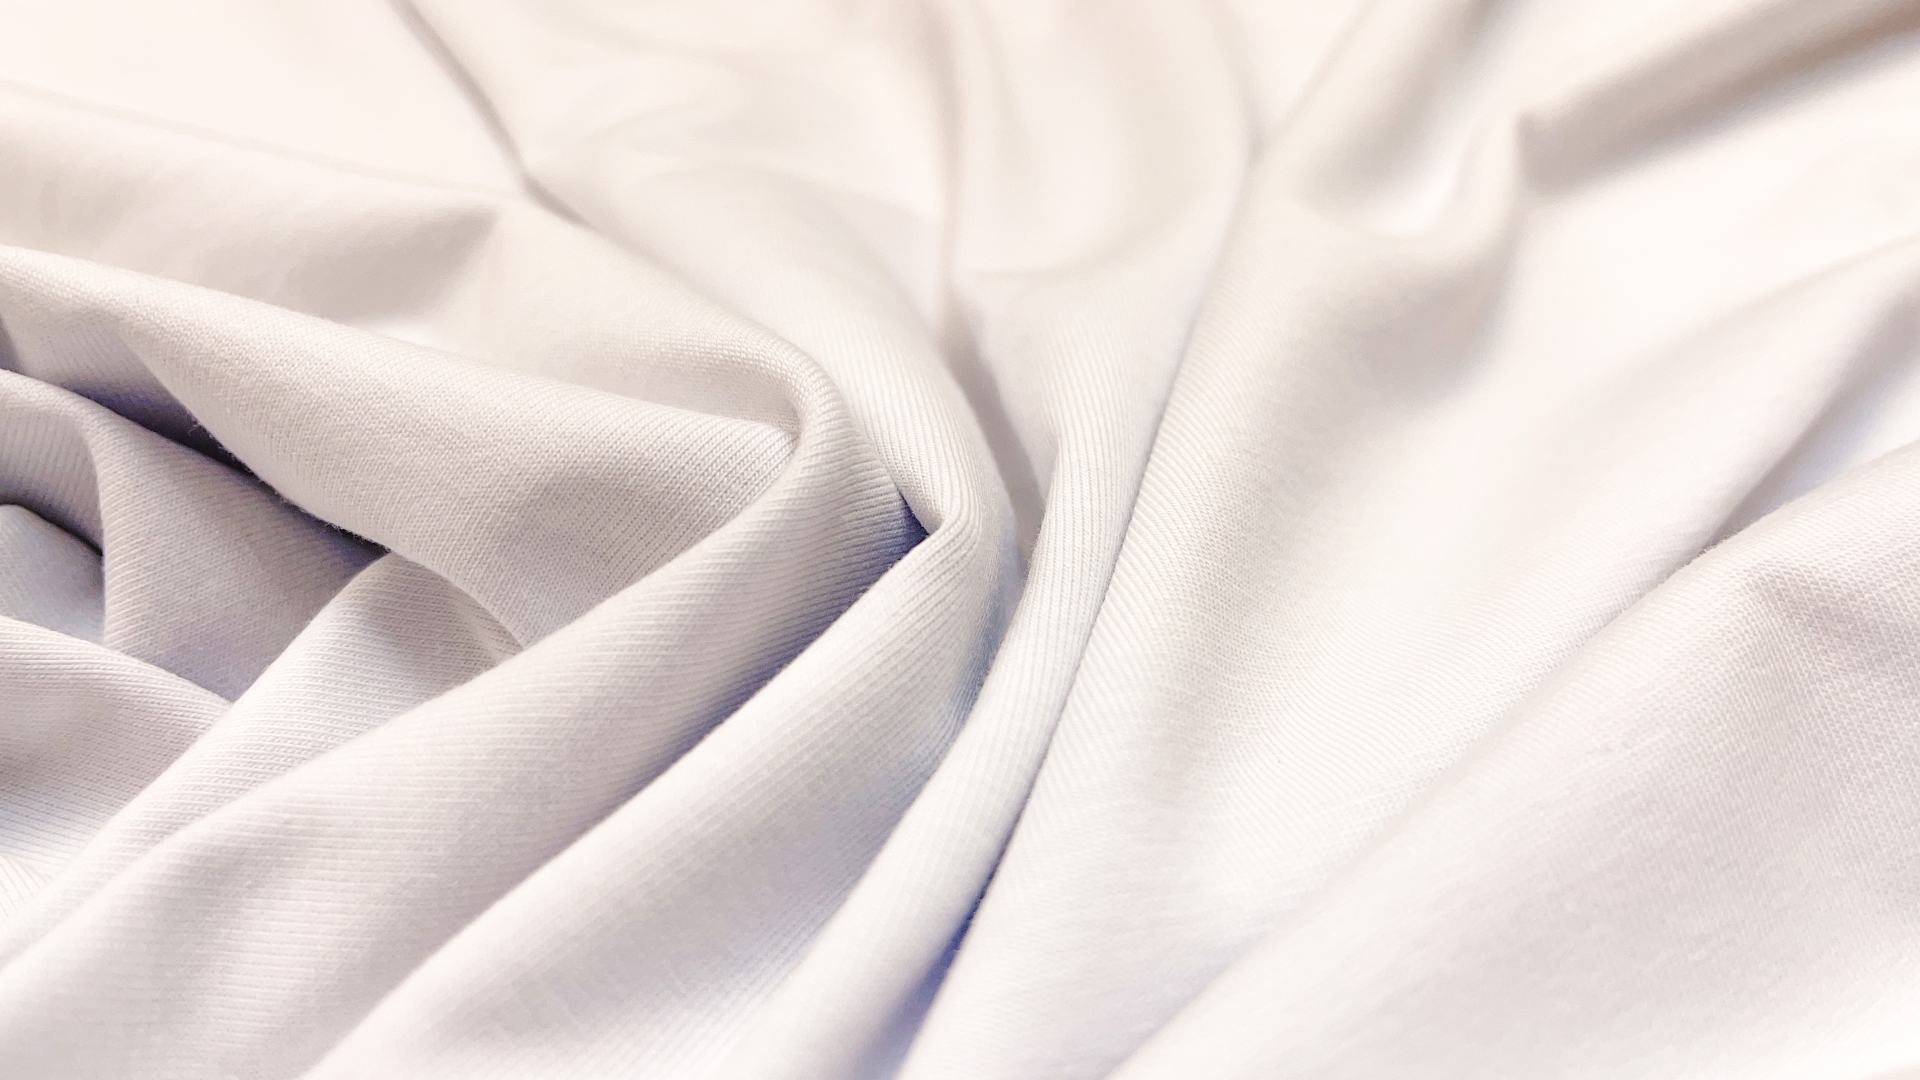 Кулирка белого цвета, качество пенье. Плотность 190 гр м.кв., идеально и для футболок, и для водолазок на холодный период. Полотно пластично, хорошо тянется, можно шить любой силуэт.